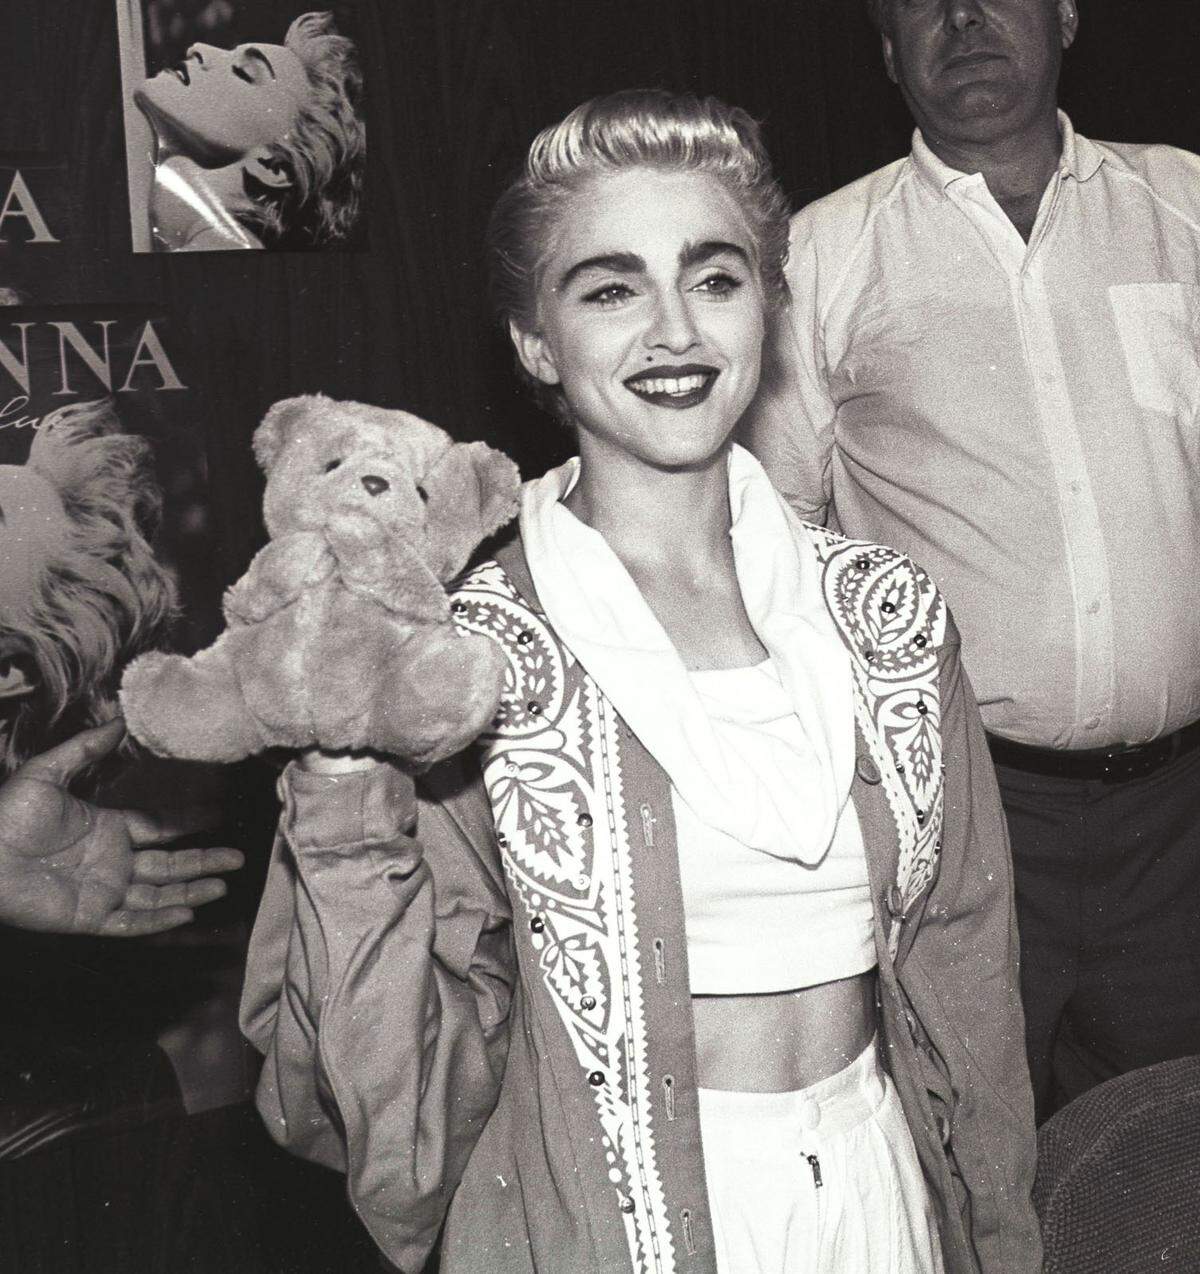 In ihrer bunten Welt aus melodischem Pop, Dance und Electro-Erotik ist Madonna eine Art erwachsenes Mädchen oder kindliche Frau geblieben, die die Regeln ihrer Karriere vollkommen selbst zu diktieren scheint. Sie gilt als erste Frau, die als Popstar die komplette Kontrolle über ihre Musik und das eigenes Image erlangte.